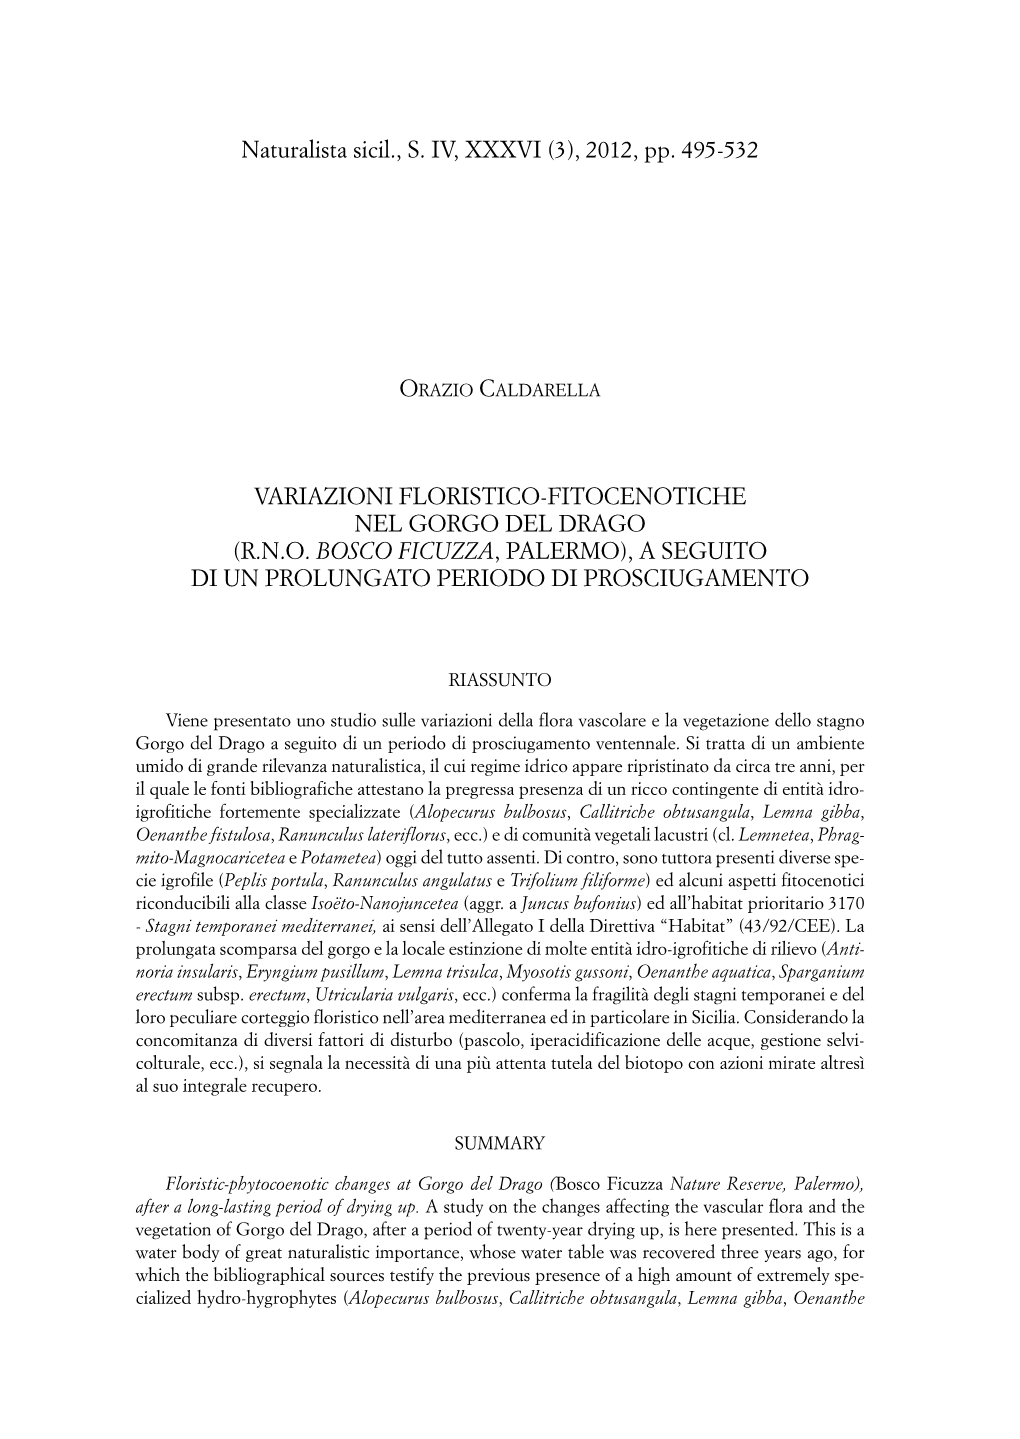 2012, Pp. 495-532 VARIAZIONI FLORISTICO-FITOCENOTICHE